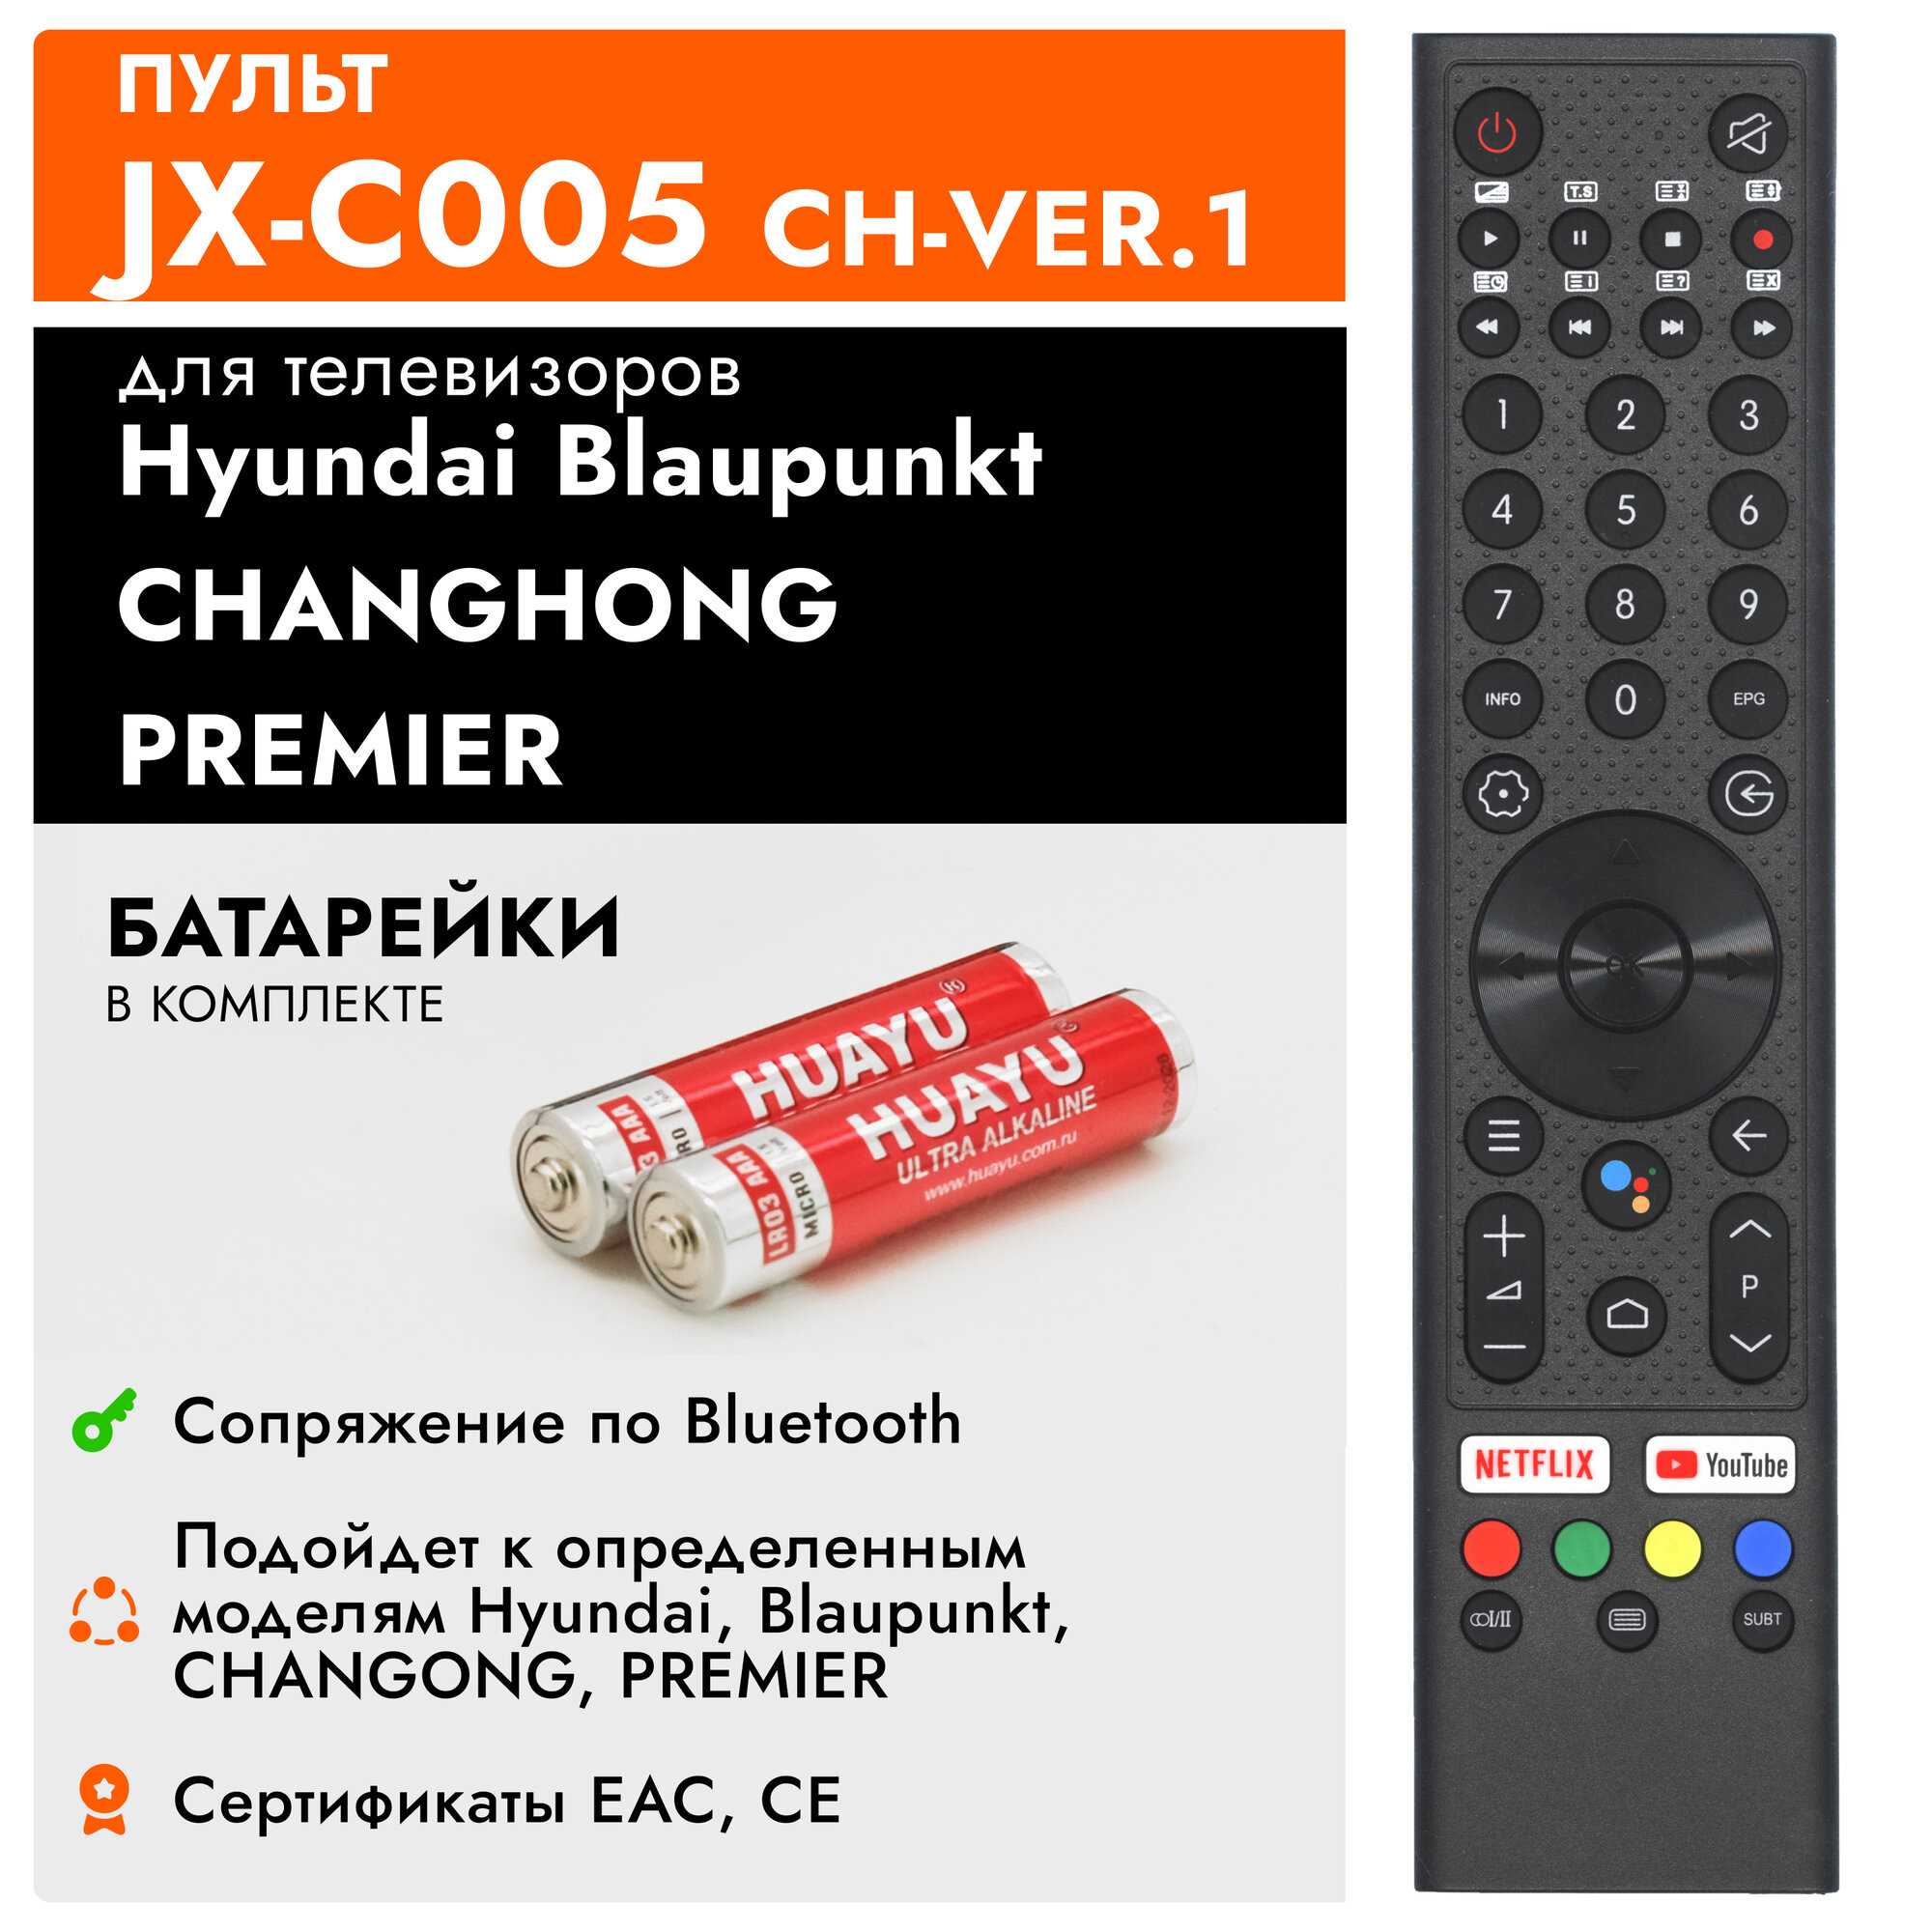 Голосовой пульт Huayu JX-C005 CH-VER.1 для телевизоров Hyundai, Blaupunkt, CHANGHONG, PREMIER